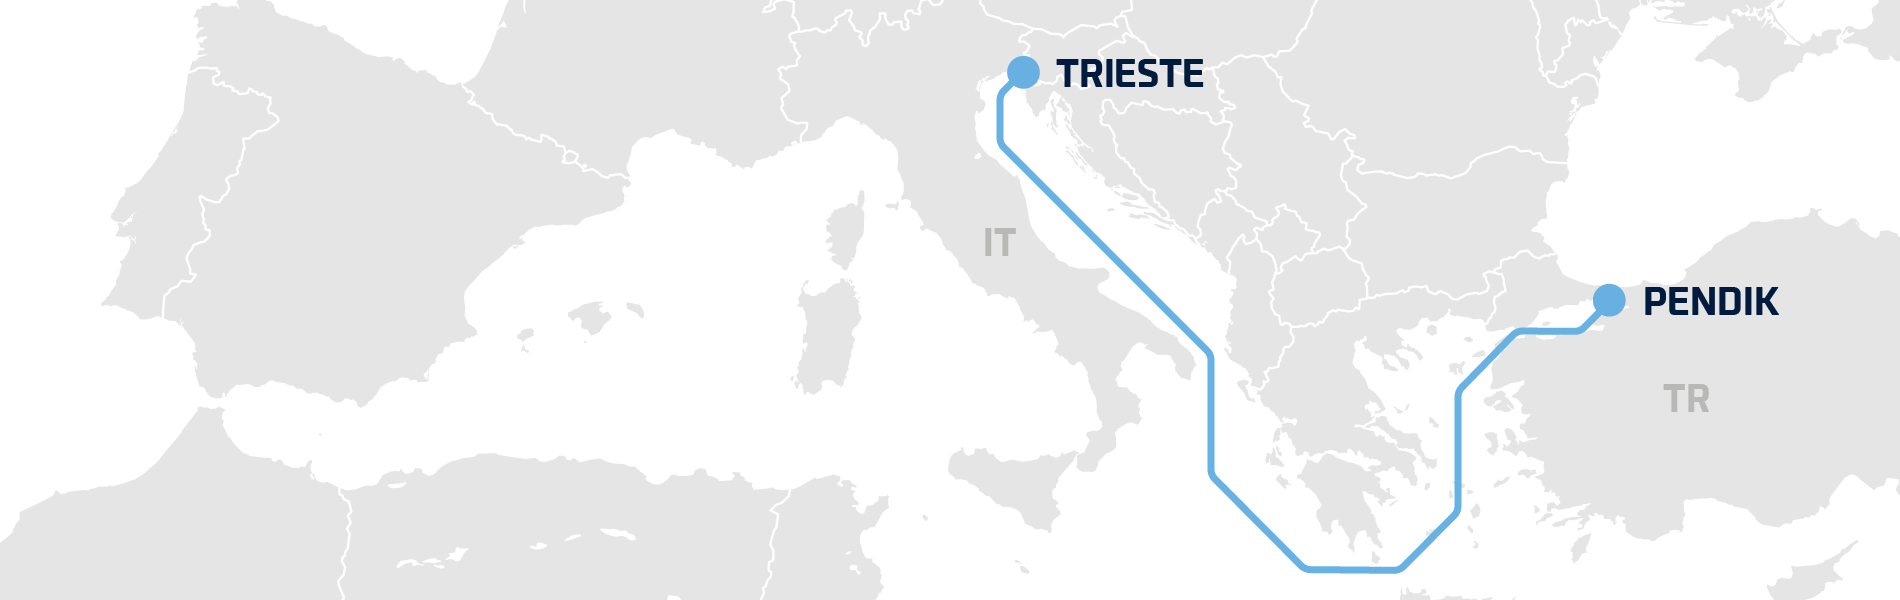 Trieste-Pendik hero